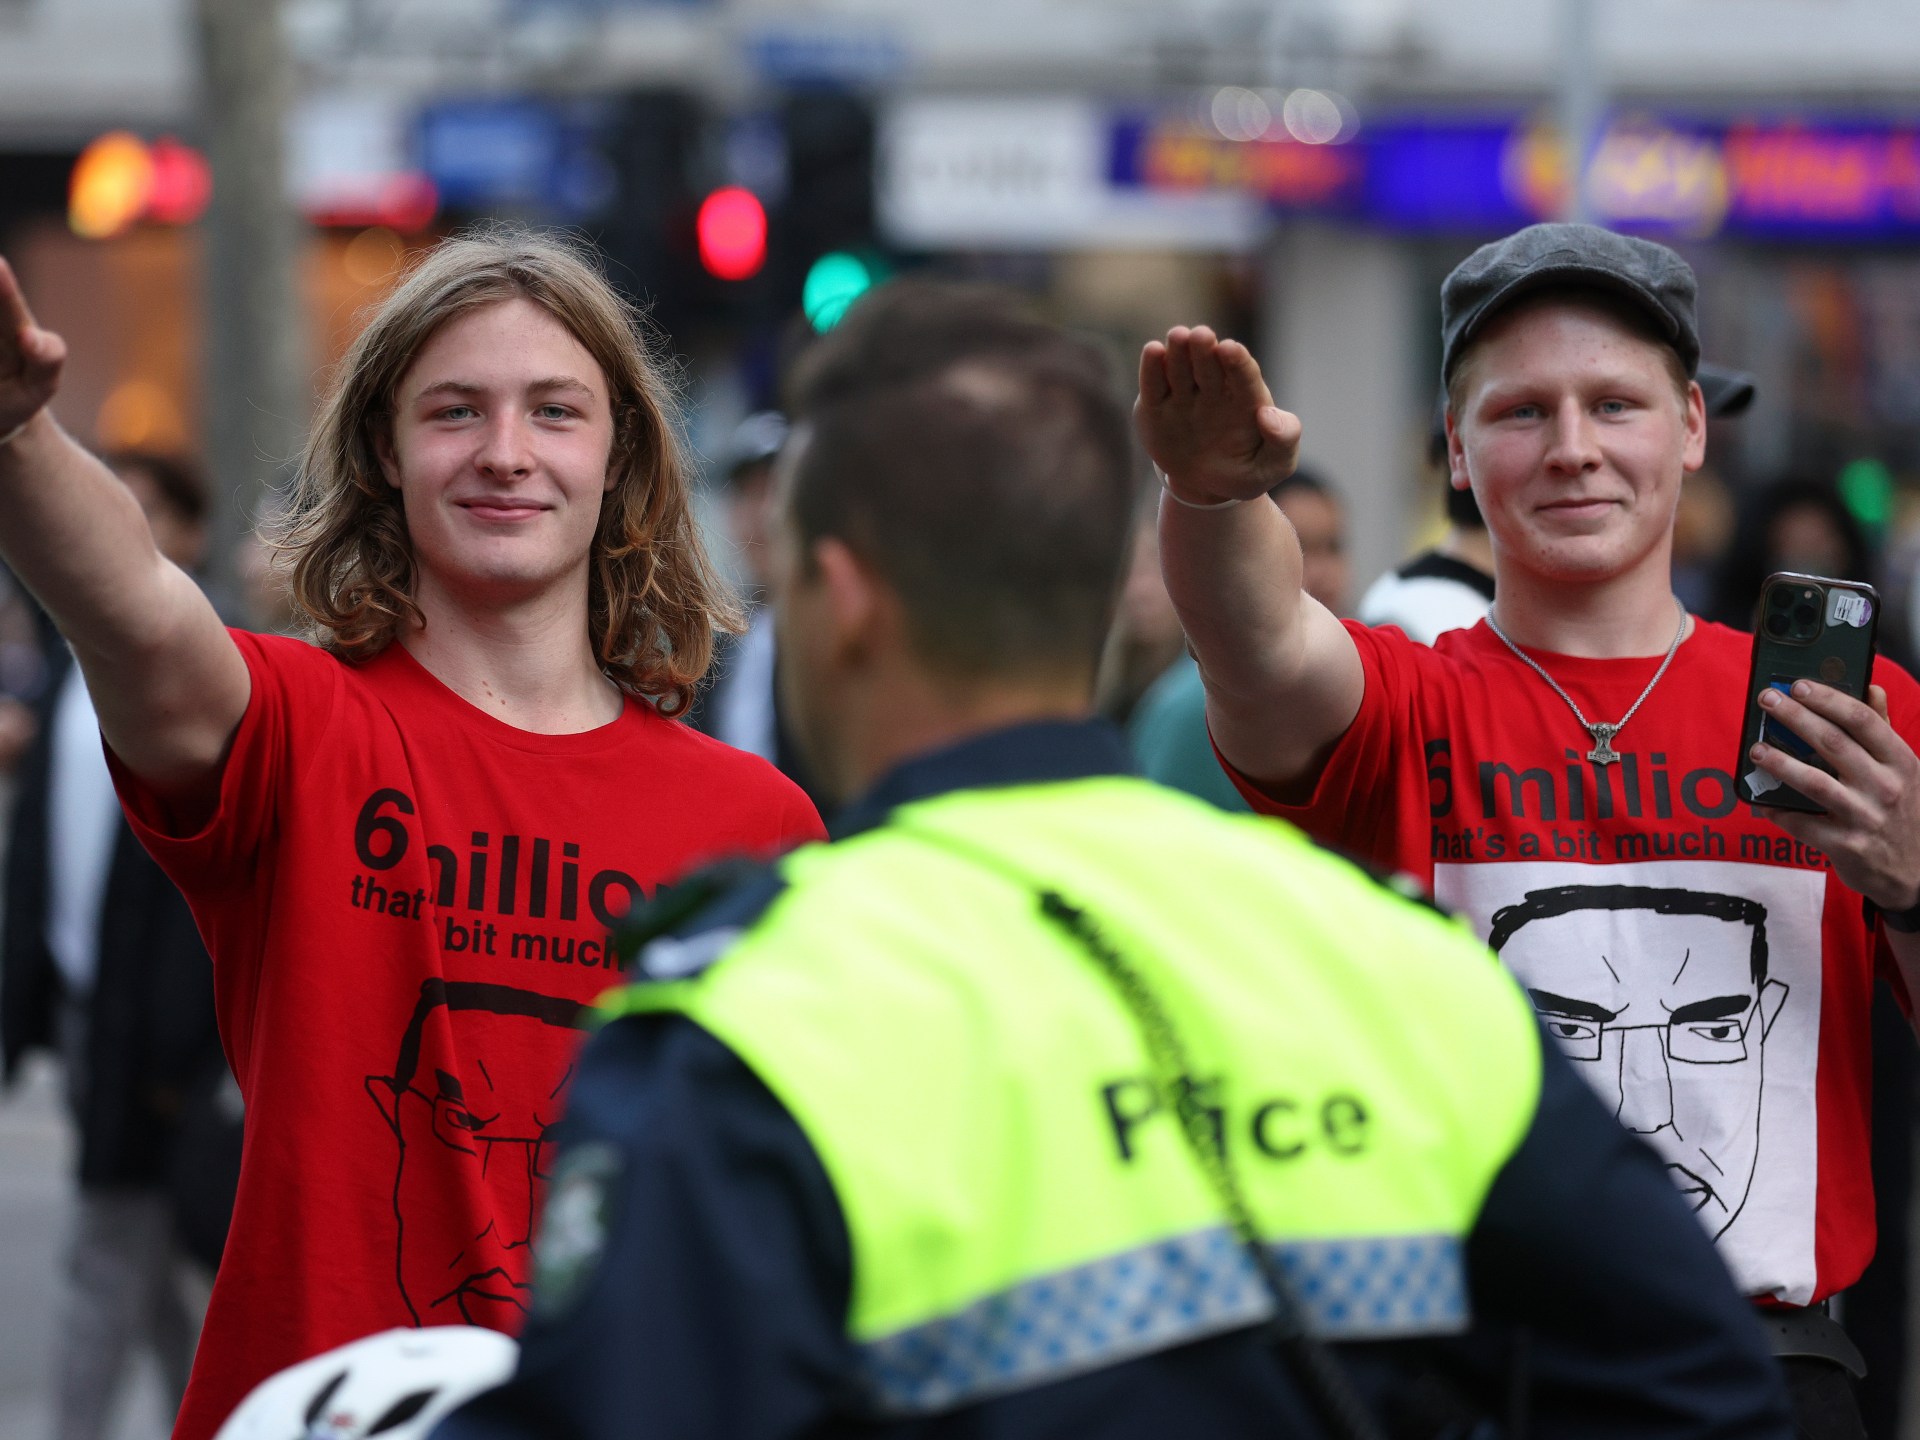 Australia akan melarang simbol Nazi dalam upaya mengekang sayap kanan |  Berita Kanan Jauh